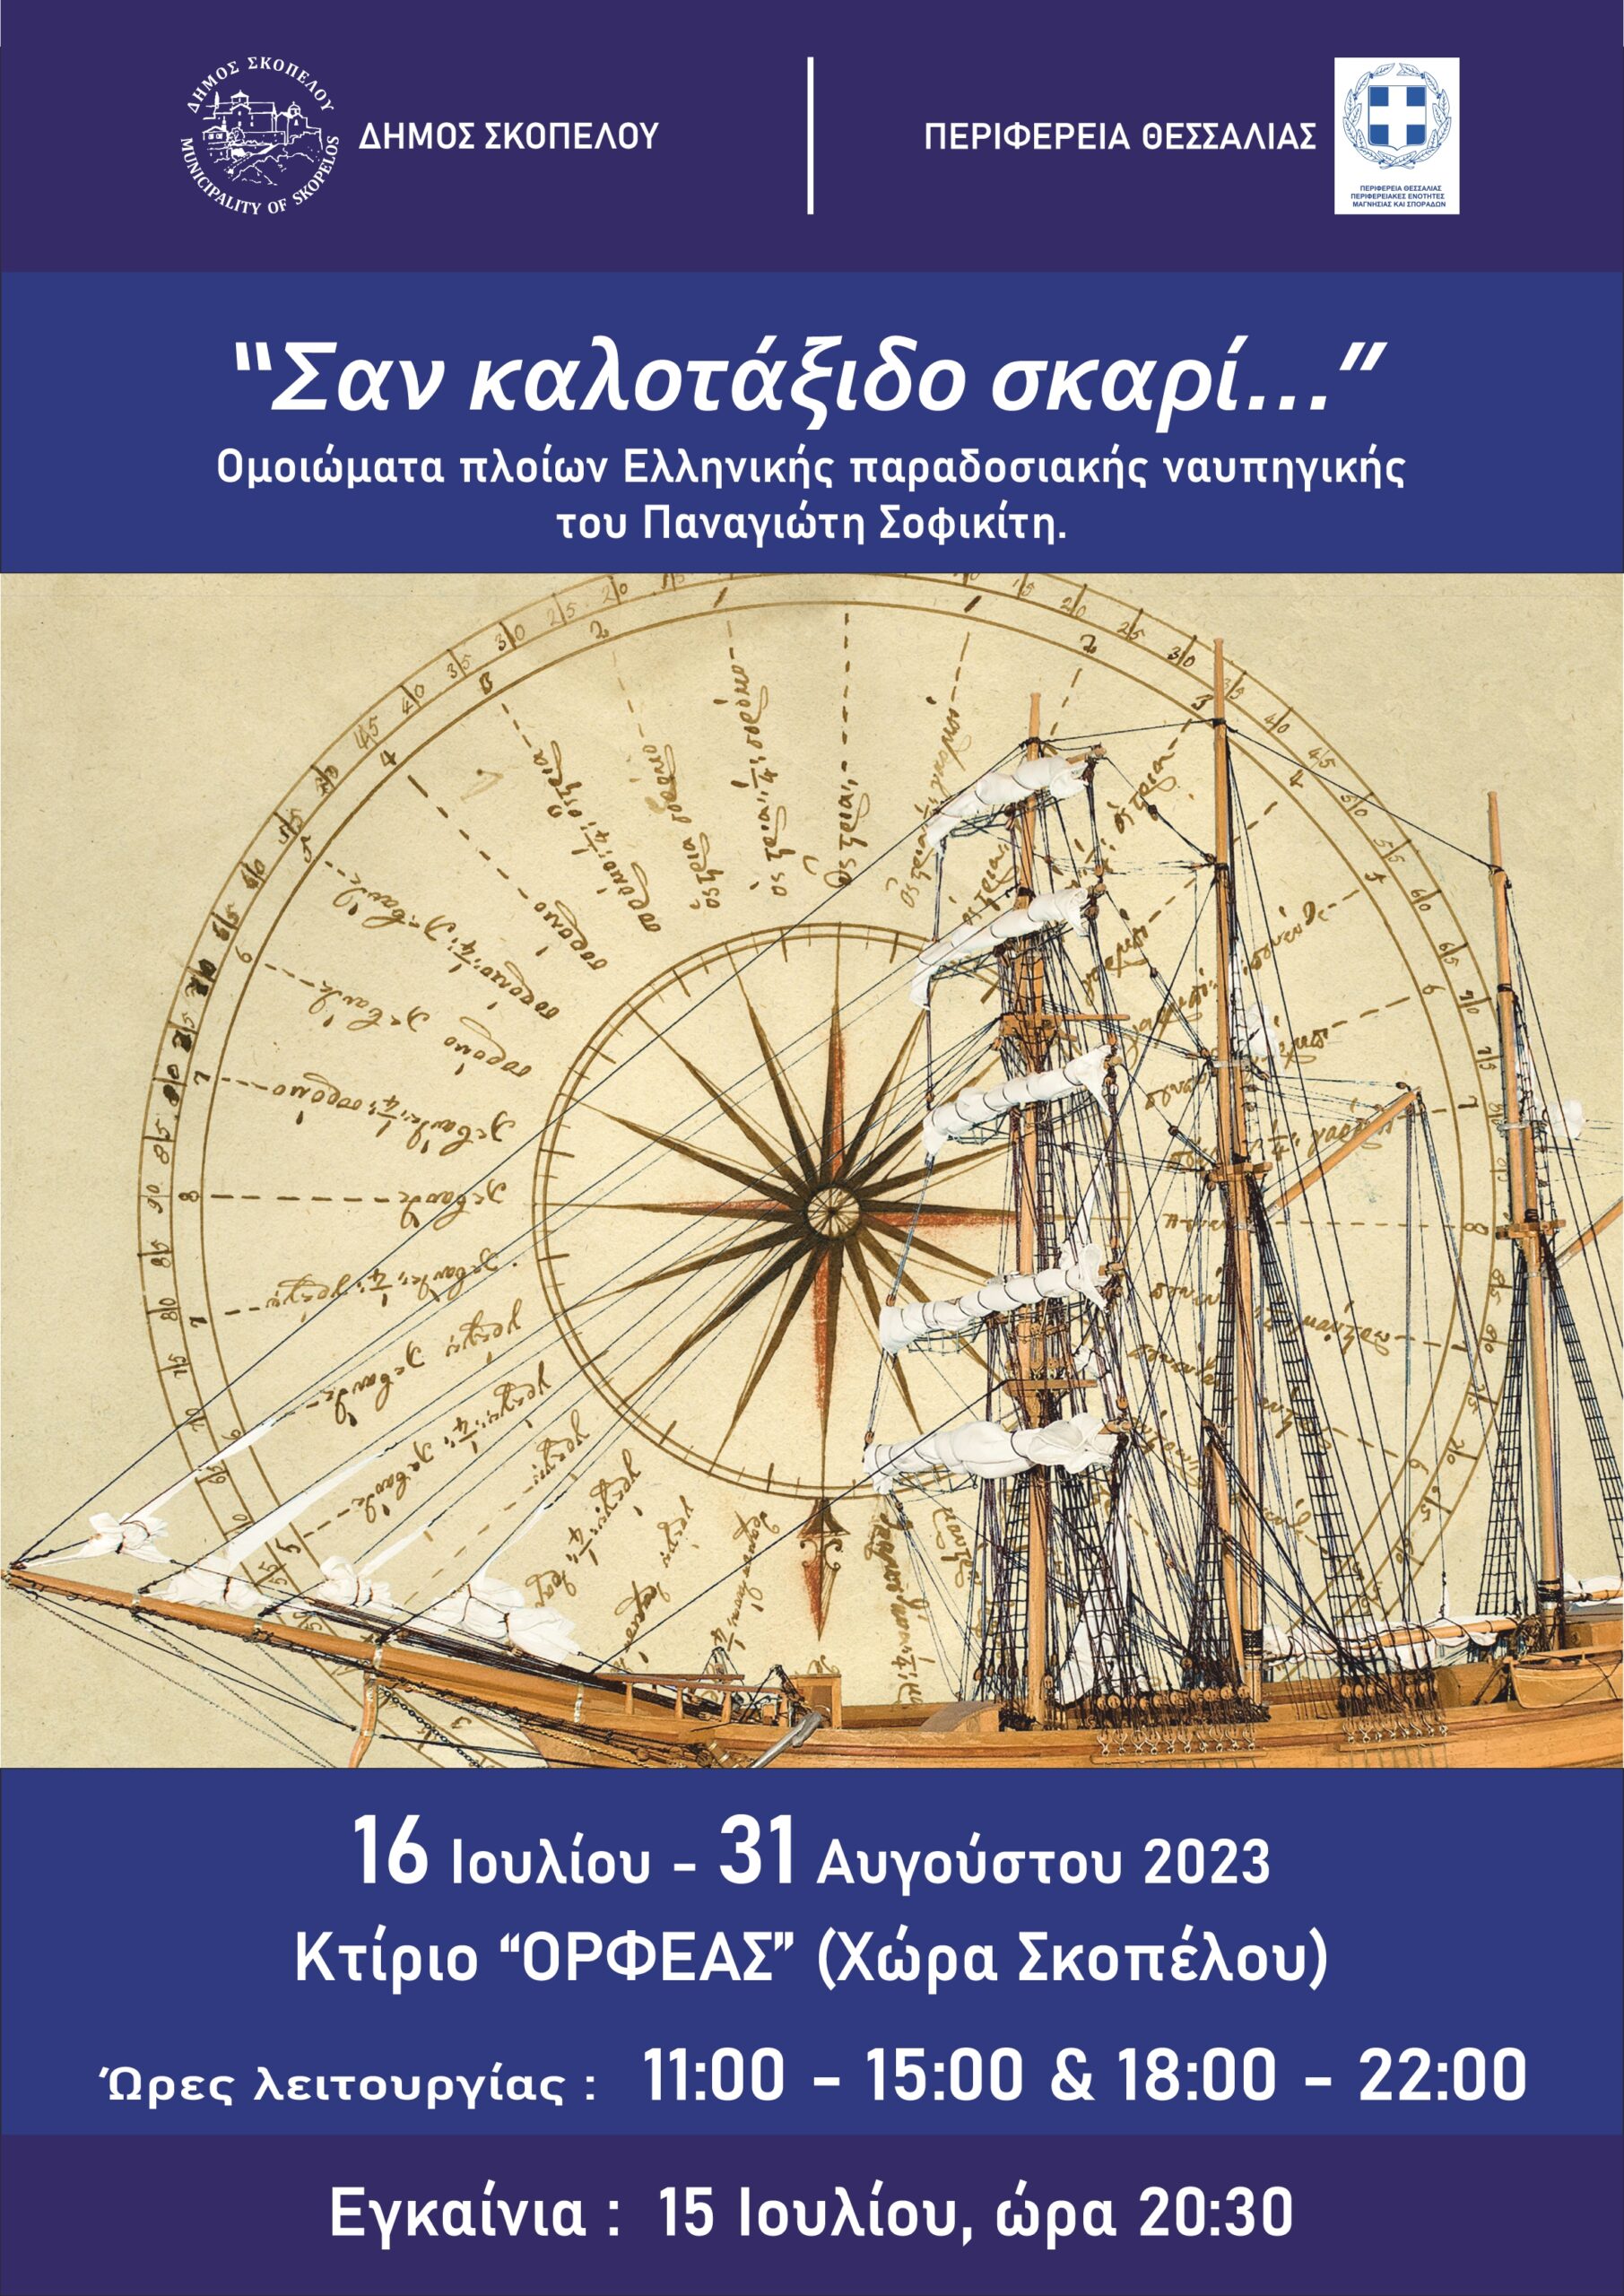 Αφίσα για την έκθεση μικροναυπηγικής Ελληνικά